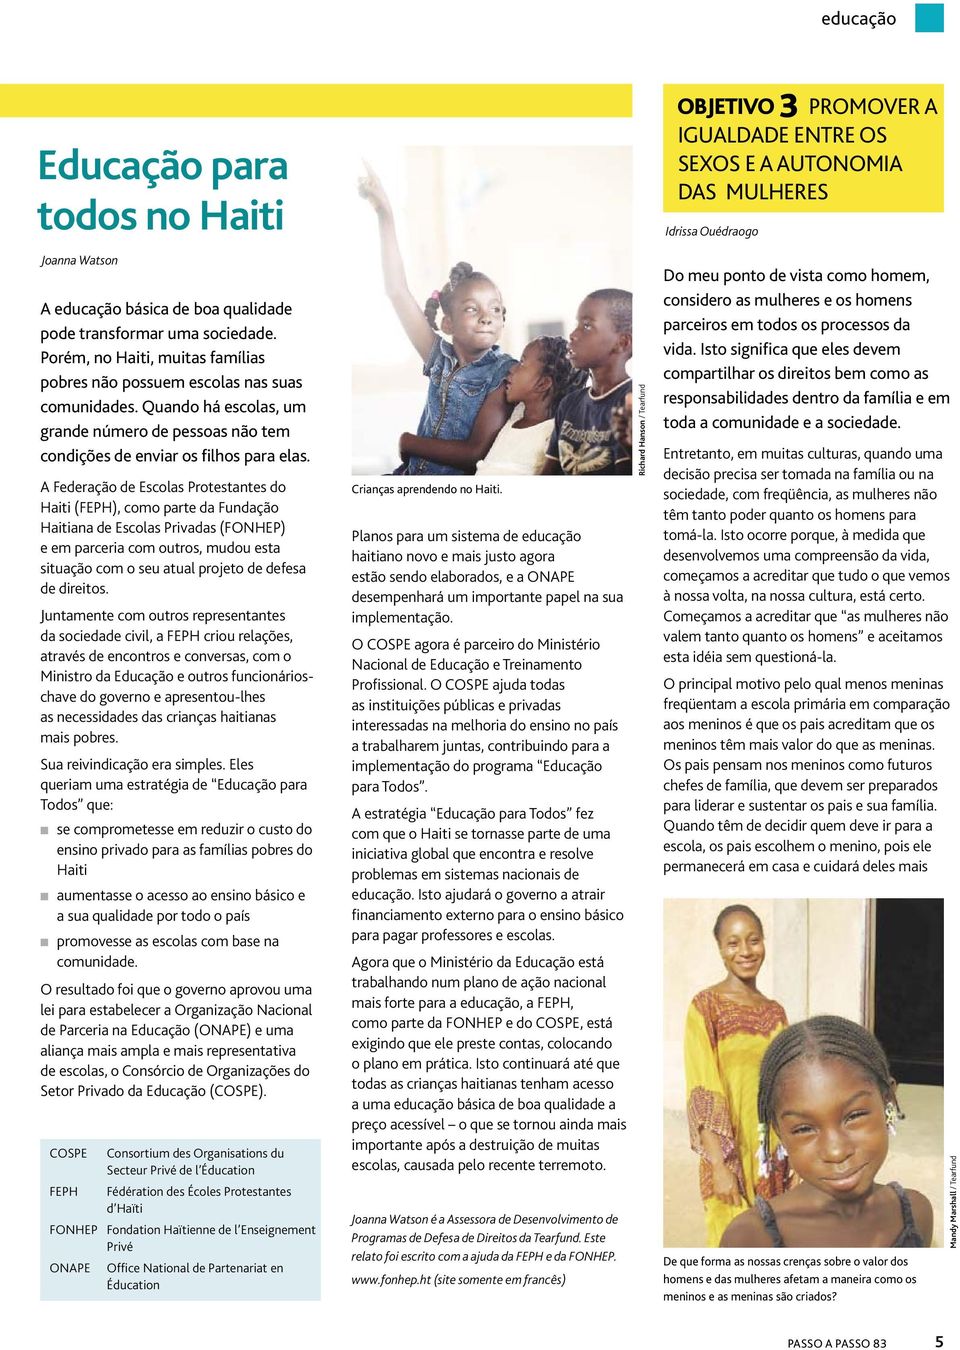 A Federação de Escolas Protestantes do Haiti (FEPH), como parte da Fundação Haitiana de Escolas Privadas (FONHEP) e em parceria com outros, mudou esta situação com o seu atual projeto de defesa de